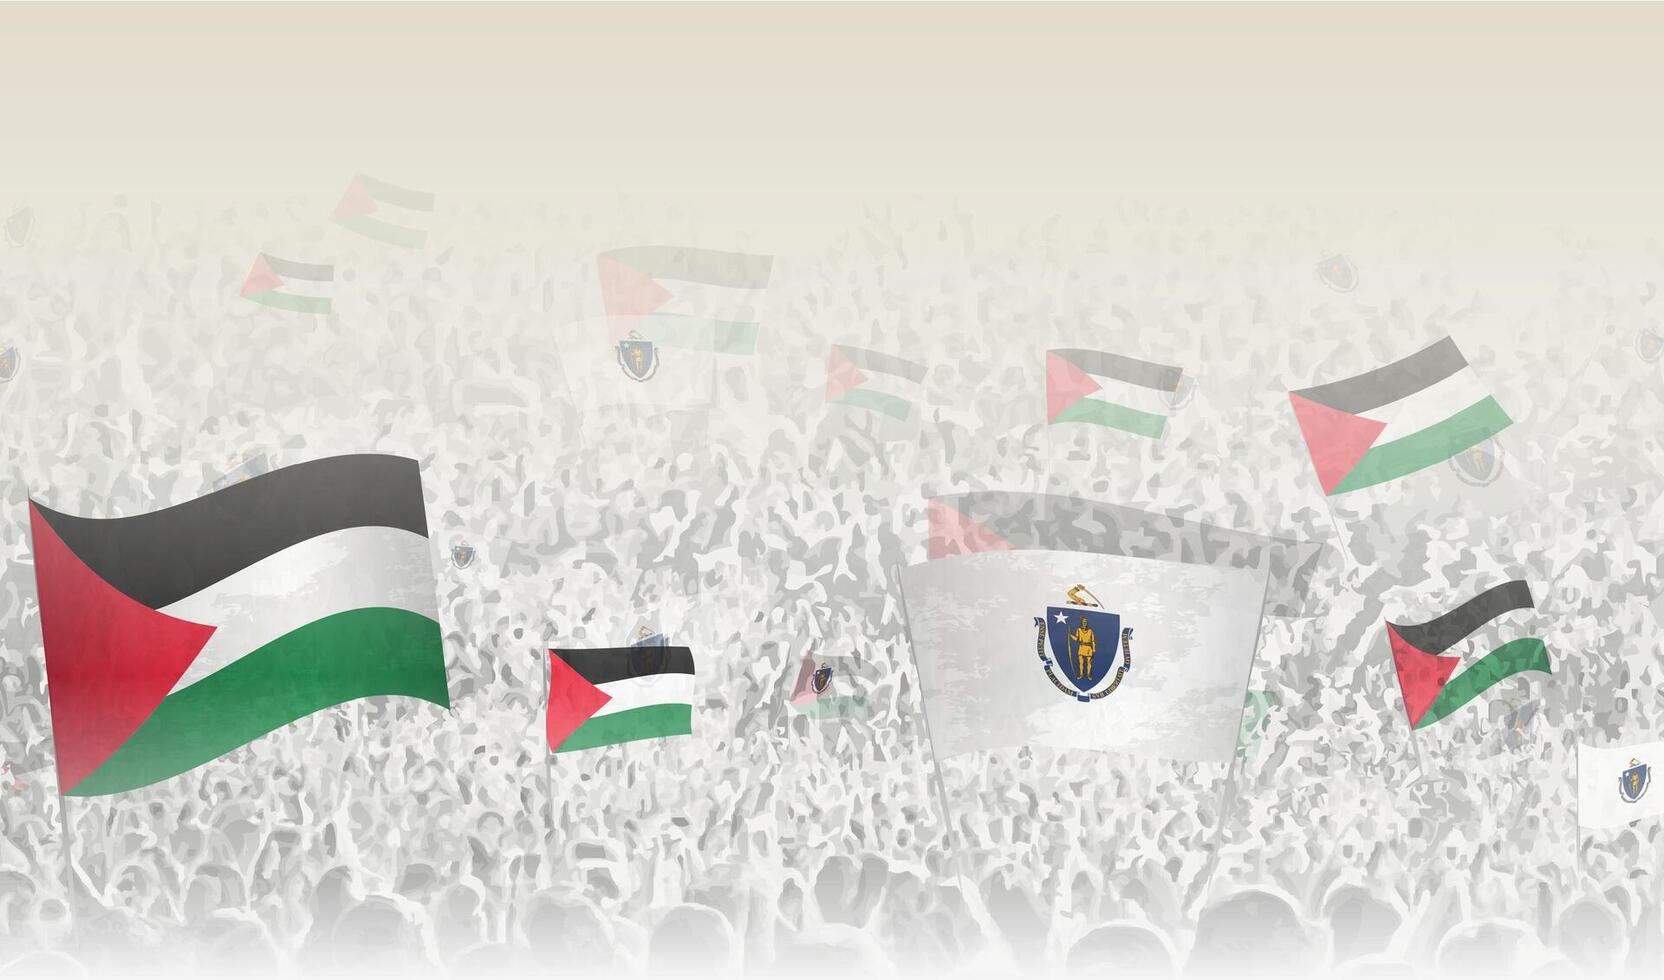 Palestina e Massachusetts bandeiras dentro uma multidão do torcendo pessoas. vetor